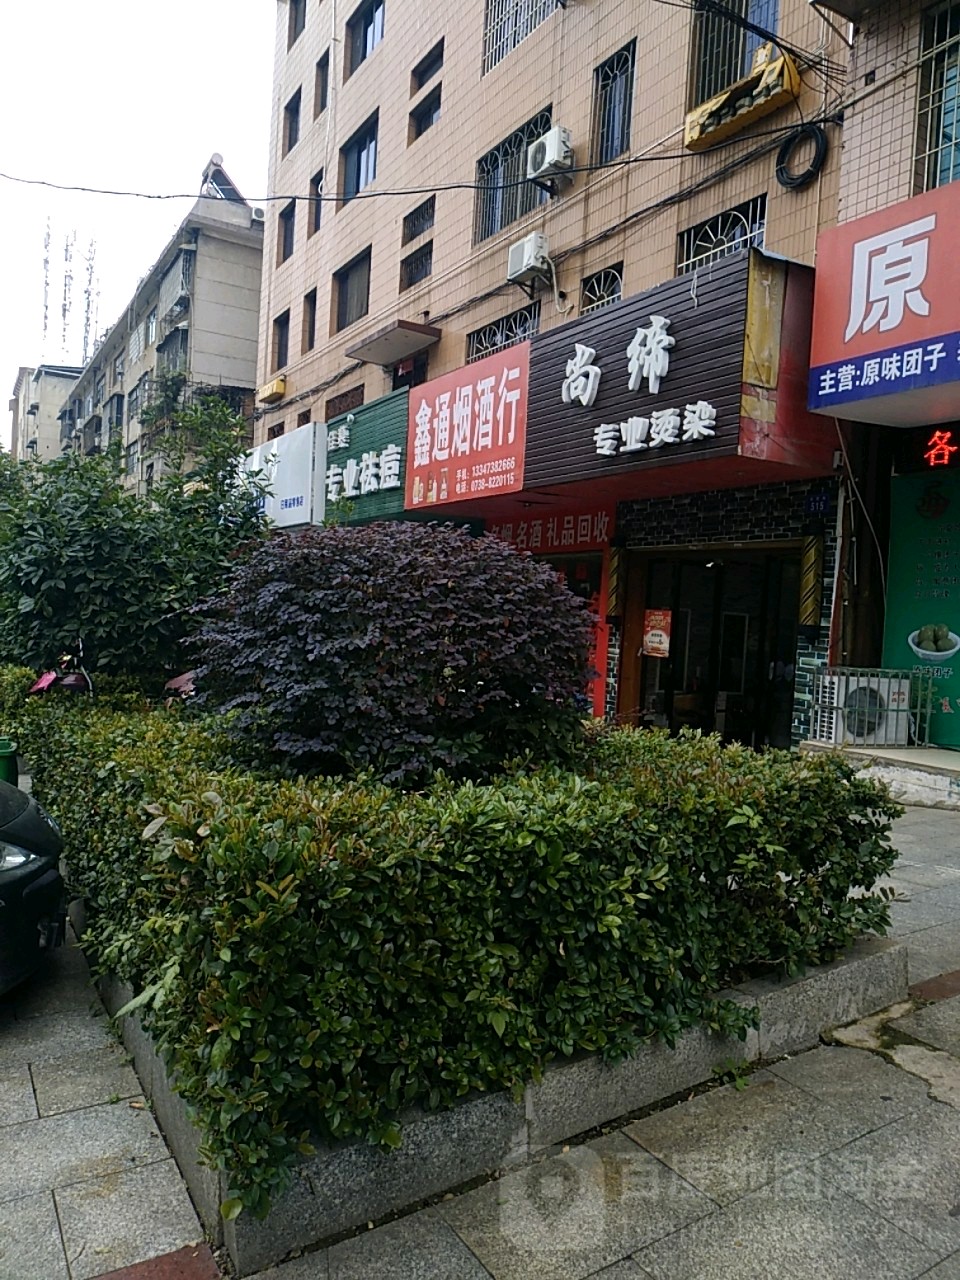 鑫通煙酒行(東貿街店)